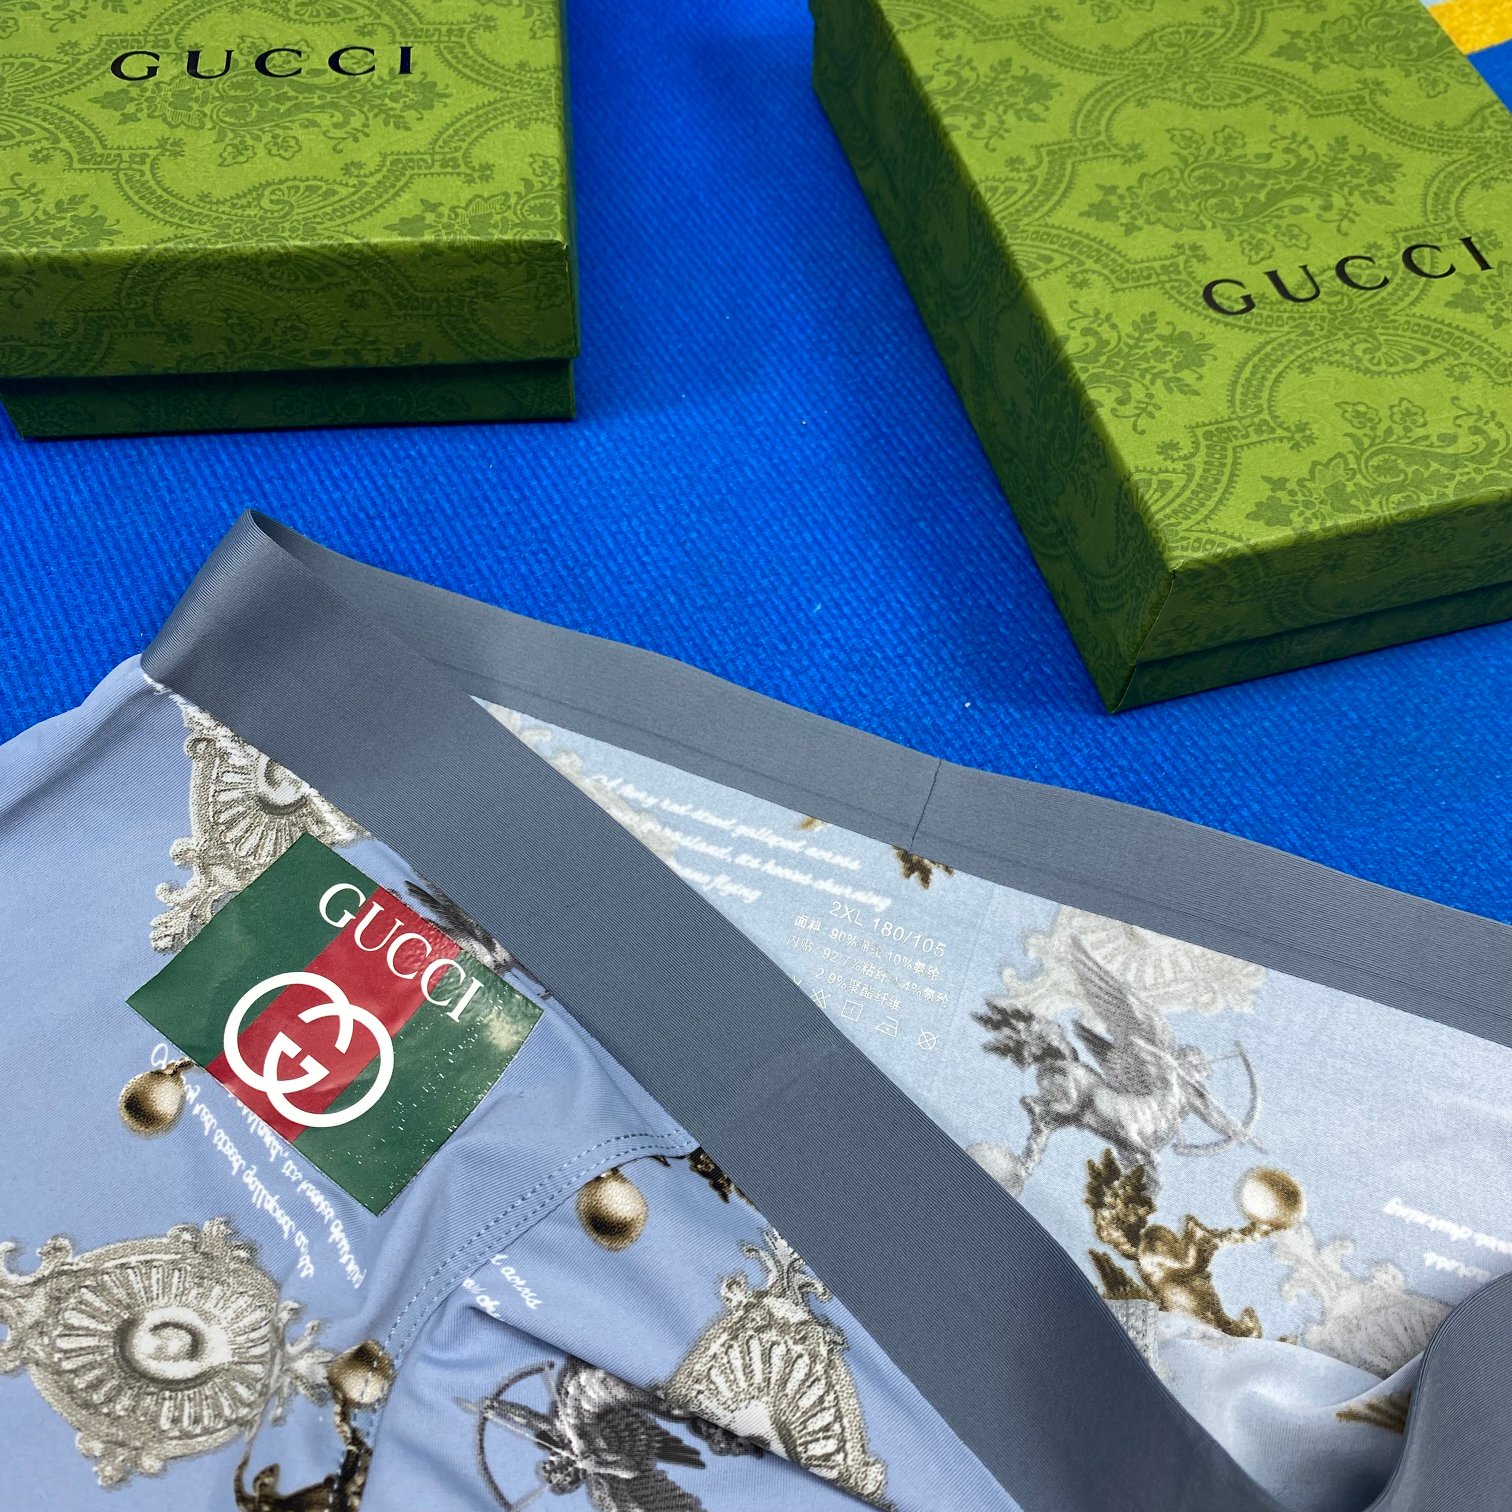 Gucci特别推出35周年纪念款释出的“G*U*l系列平角系列内裤一盒三条冰丝贴身之物不能迁就内裤一定要